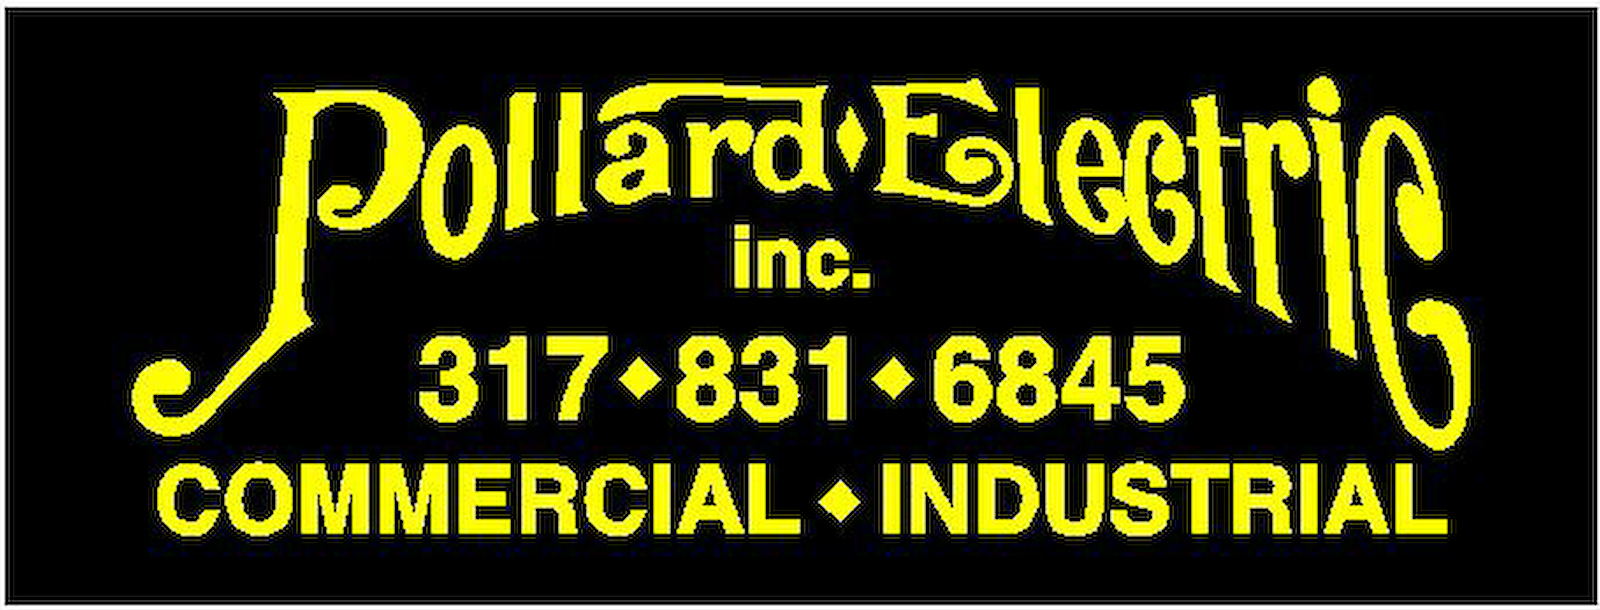 Pollard Electric Inc.